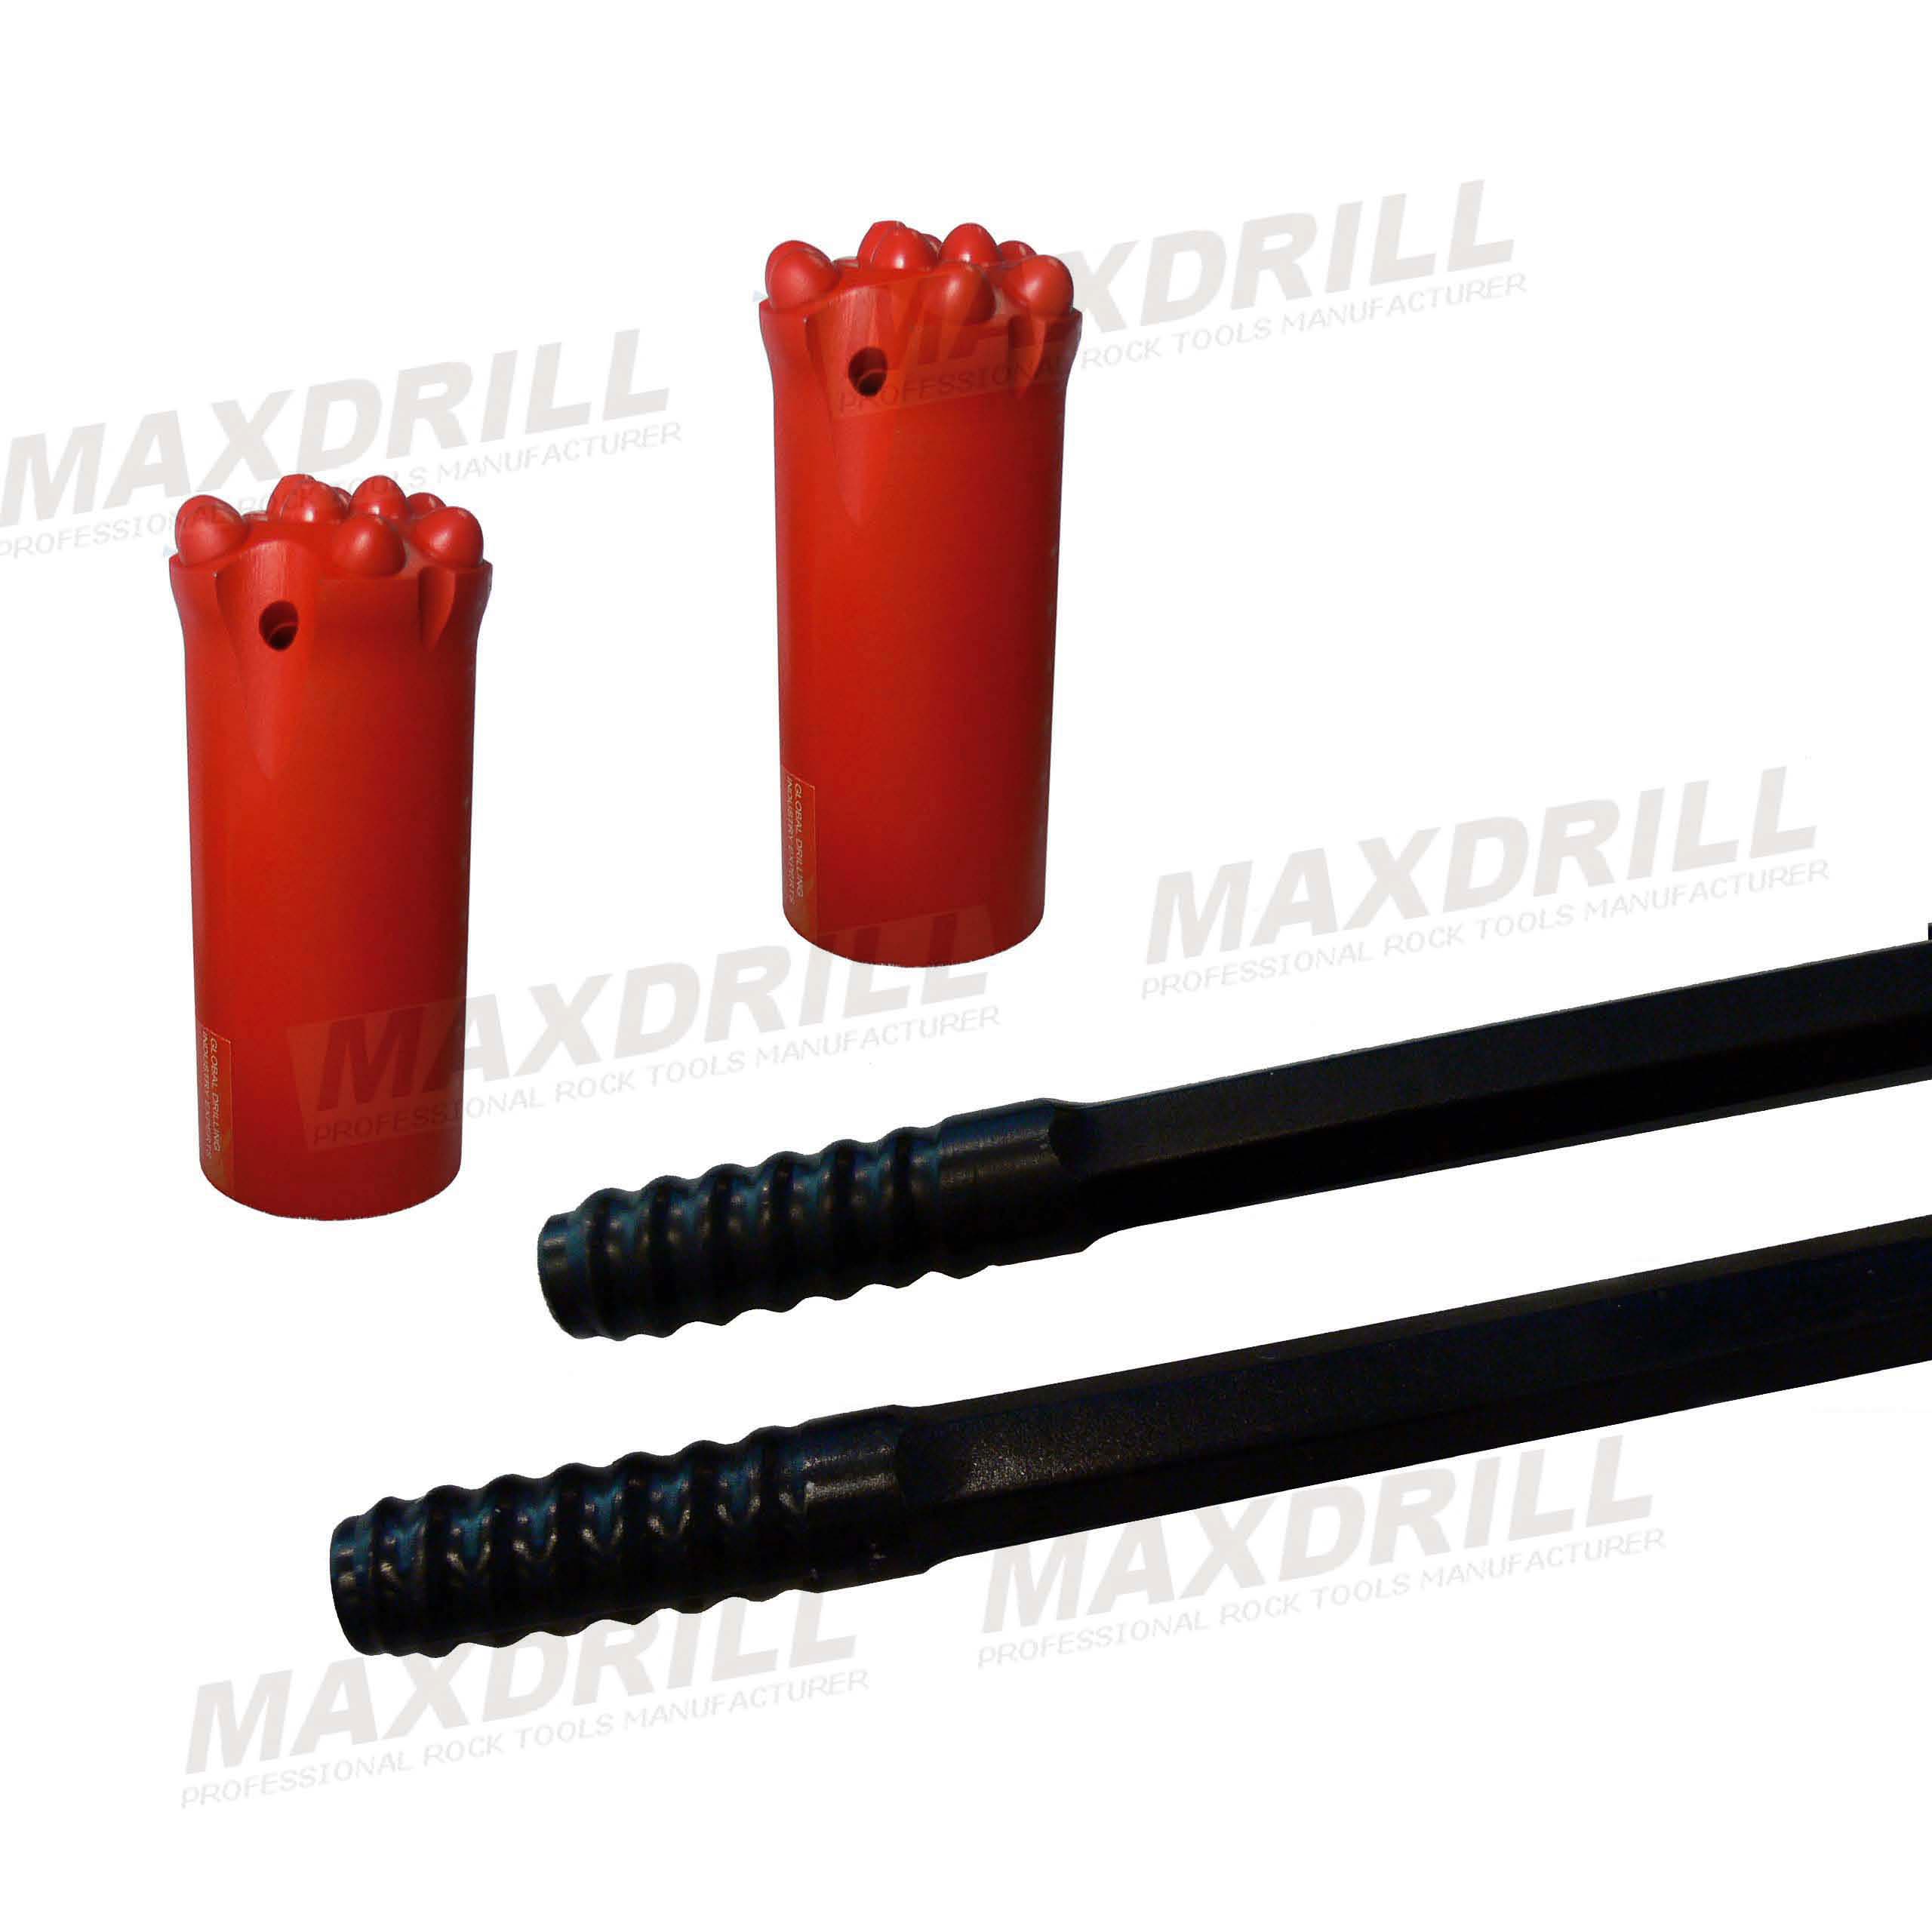 MAXDRILL Drifting Drill Rod- Extension Rod